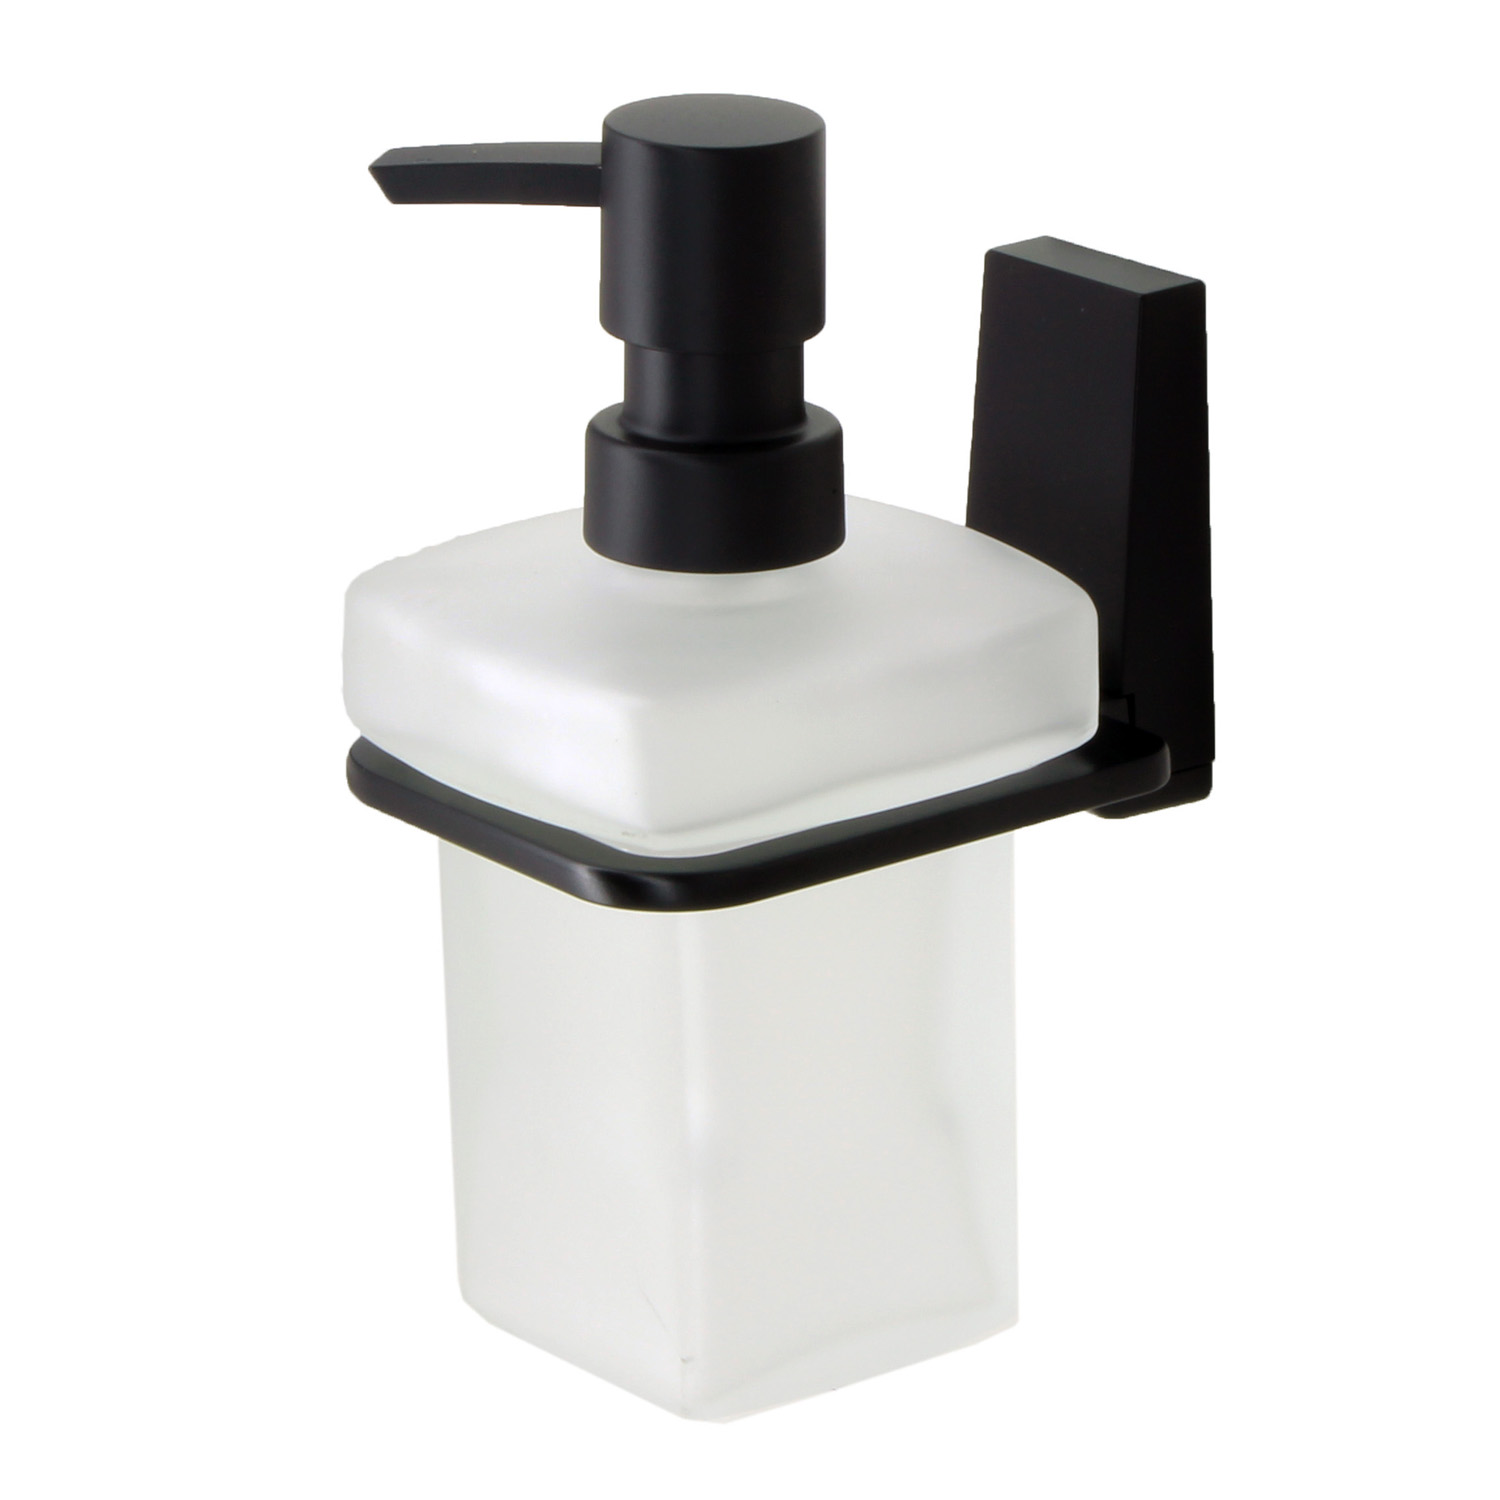 Дозатор для жидкого мыла Wasserkraft Abens чёрный 7,8х11,5х15,5 см дозатор для жидкого мыла raindrops чёрный камень